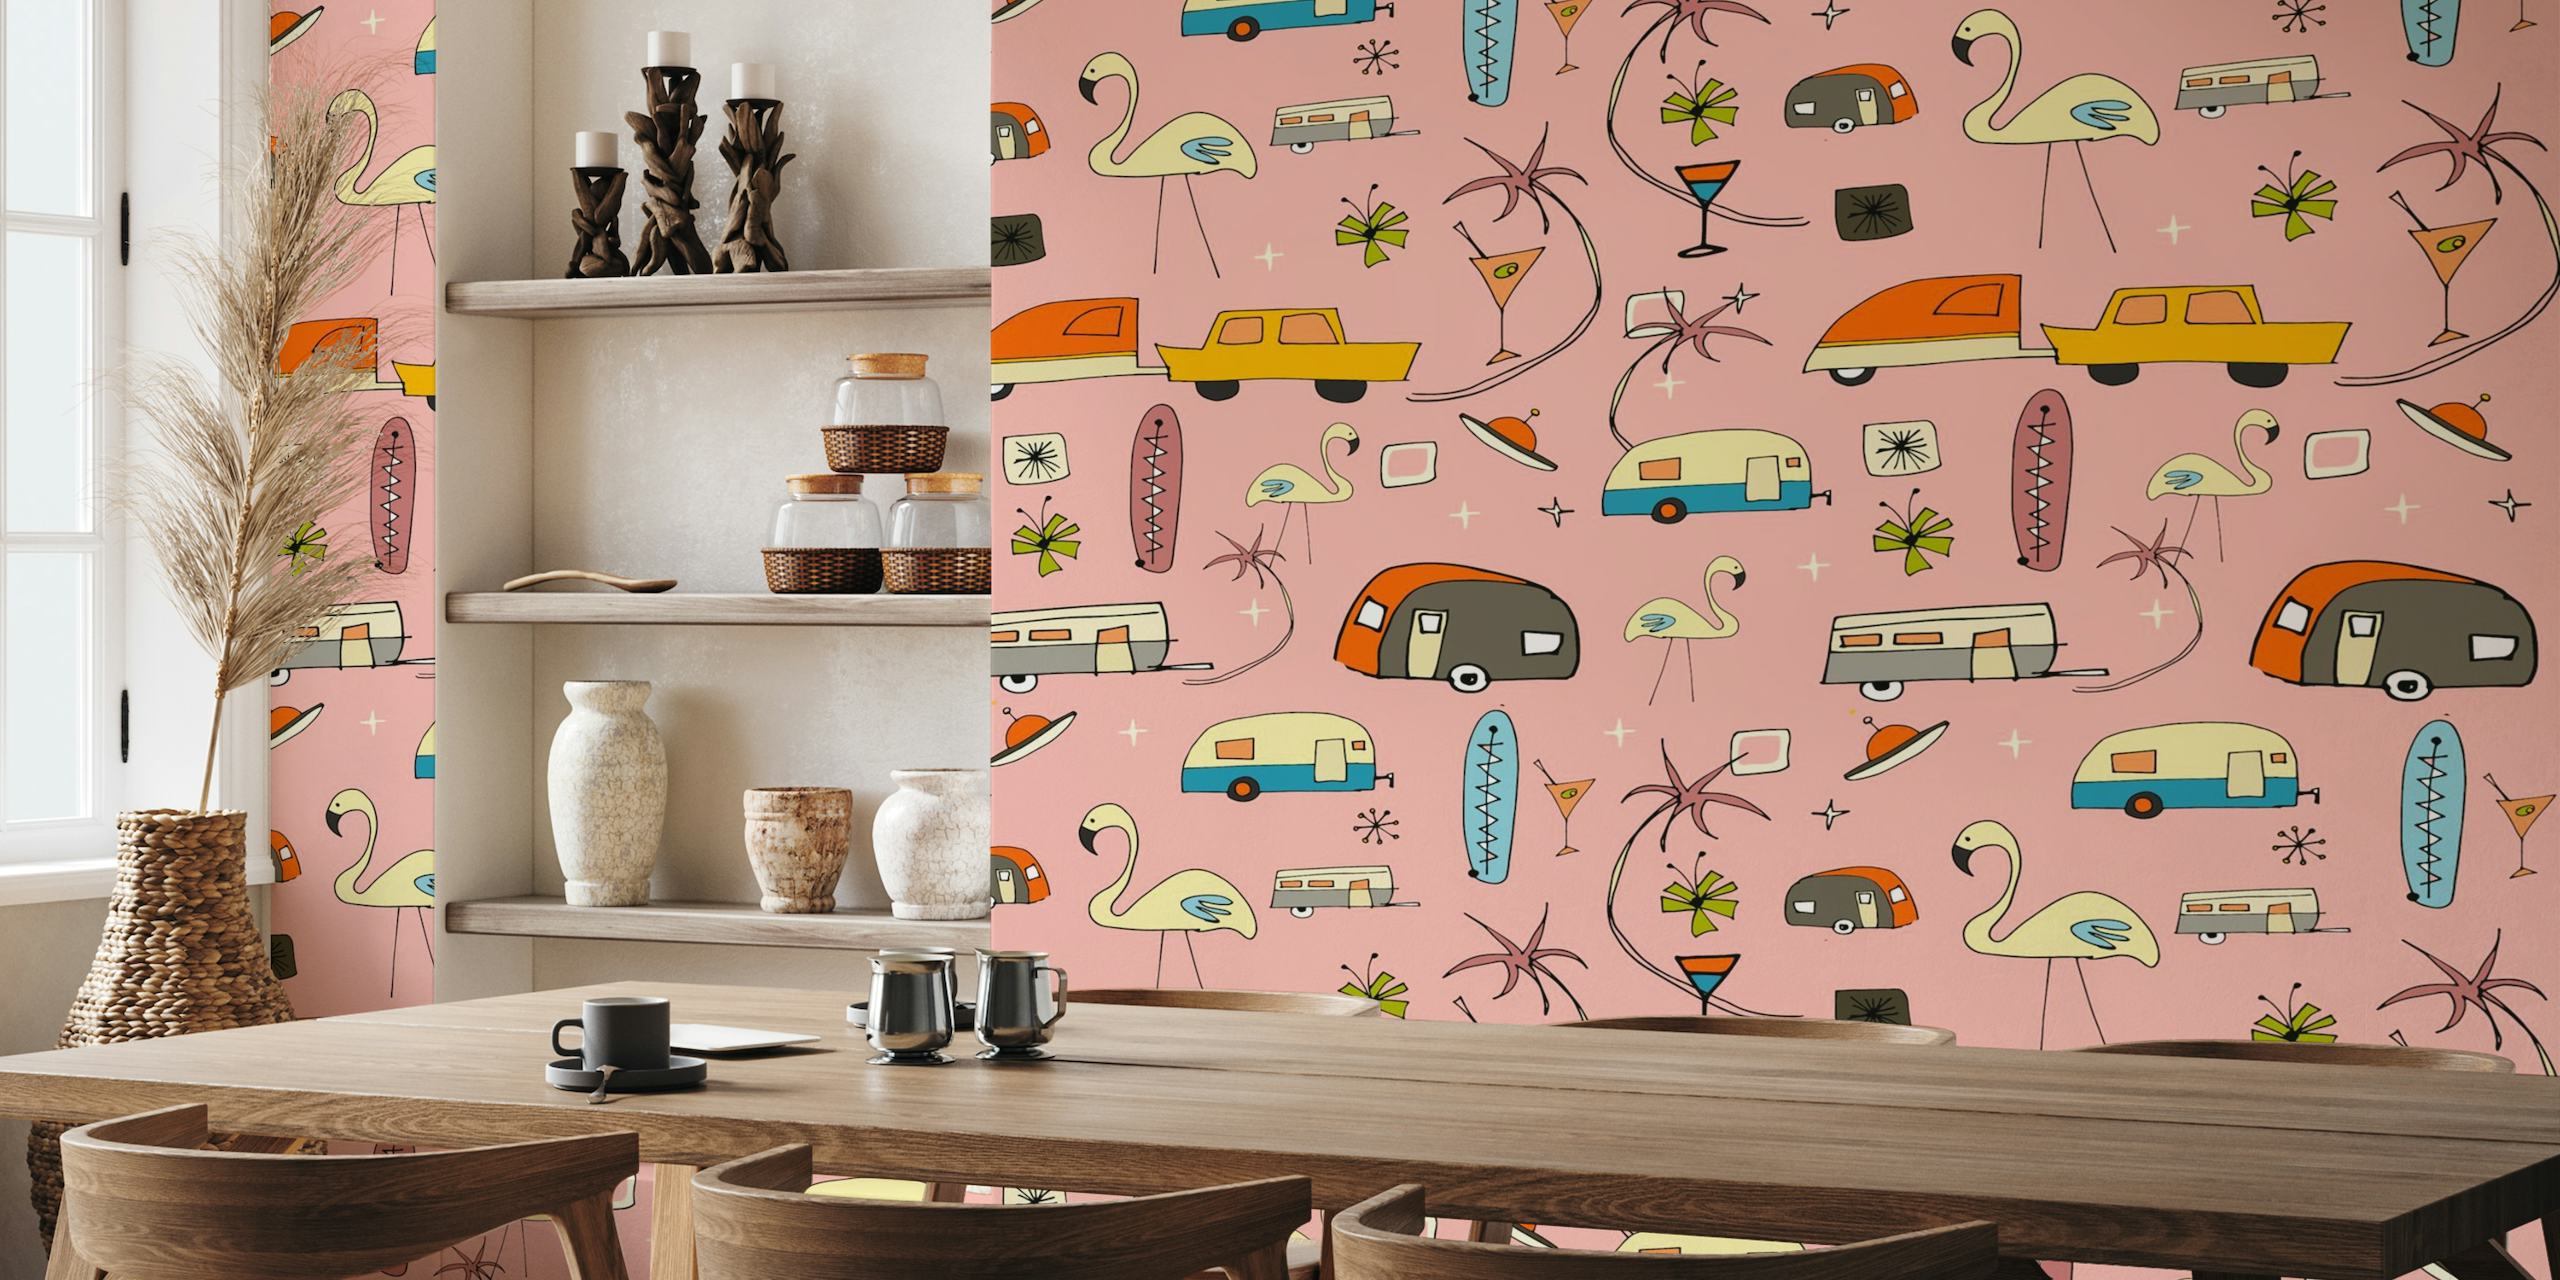 Zidna slika inspirirana starinom s ružičastom pozadinom, flamingosima, prikolicama i palmama